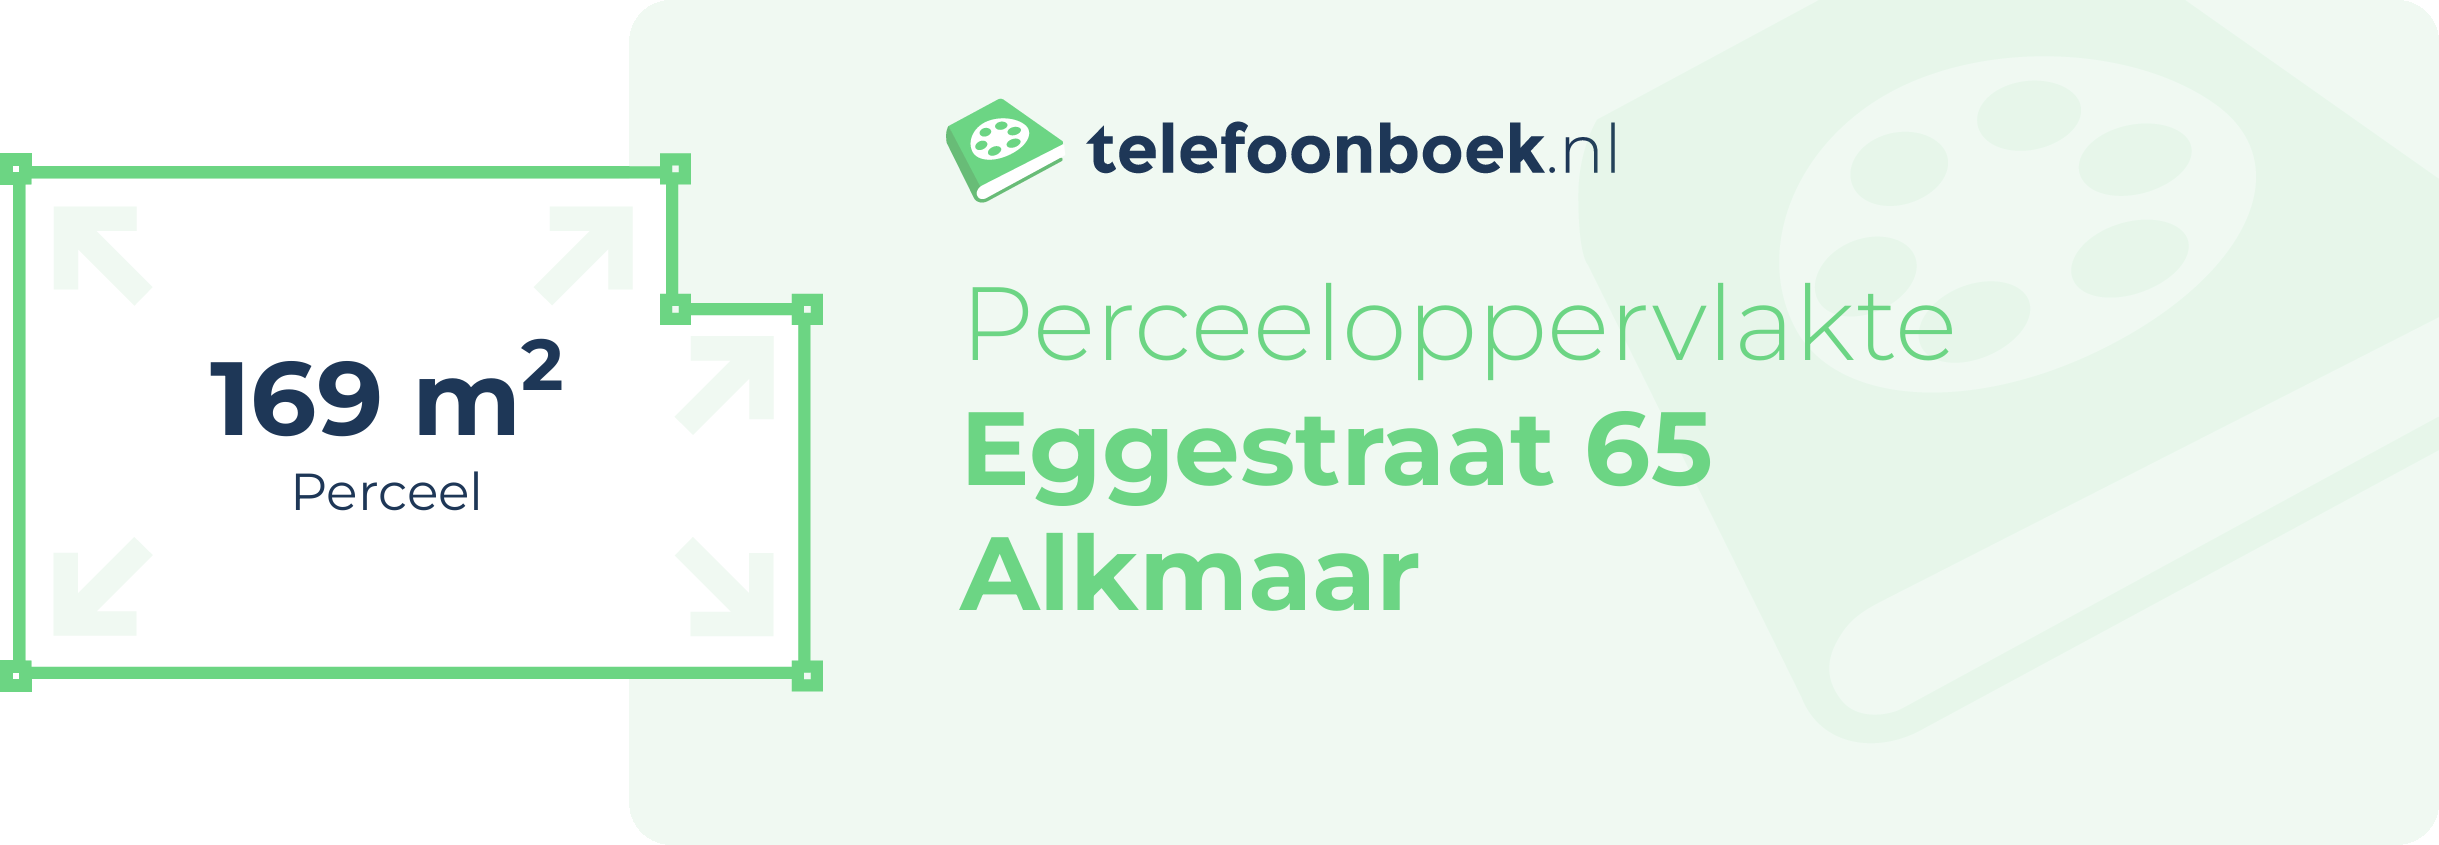 Perceeloppervlakte Eggestraat 65 Alkmaar